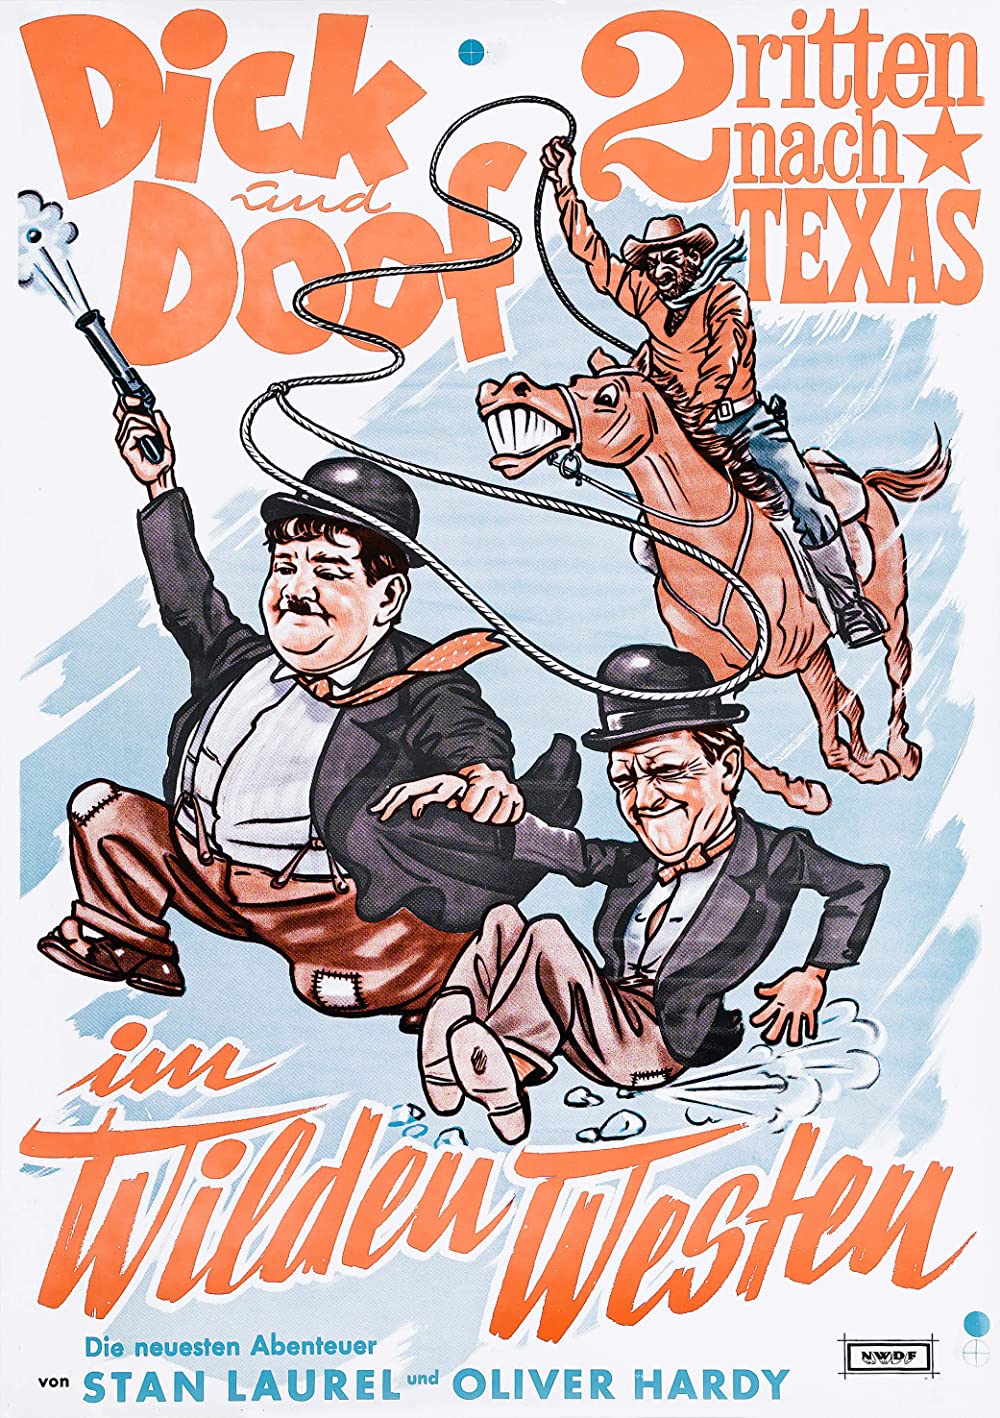 Dick und Doof in: Zwei ritten nach Texas